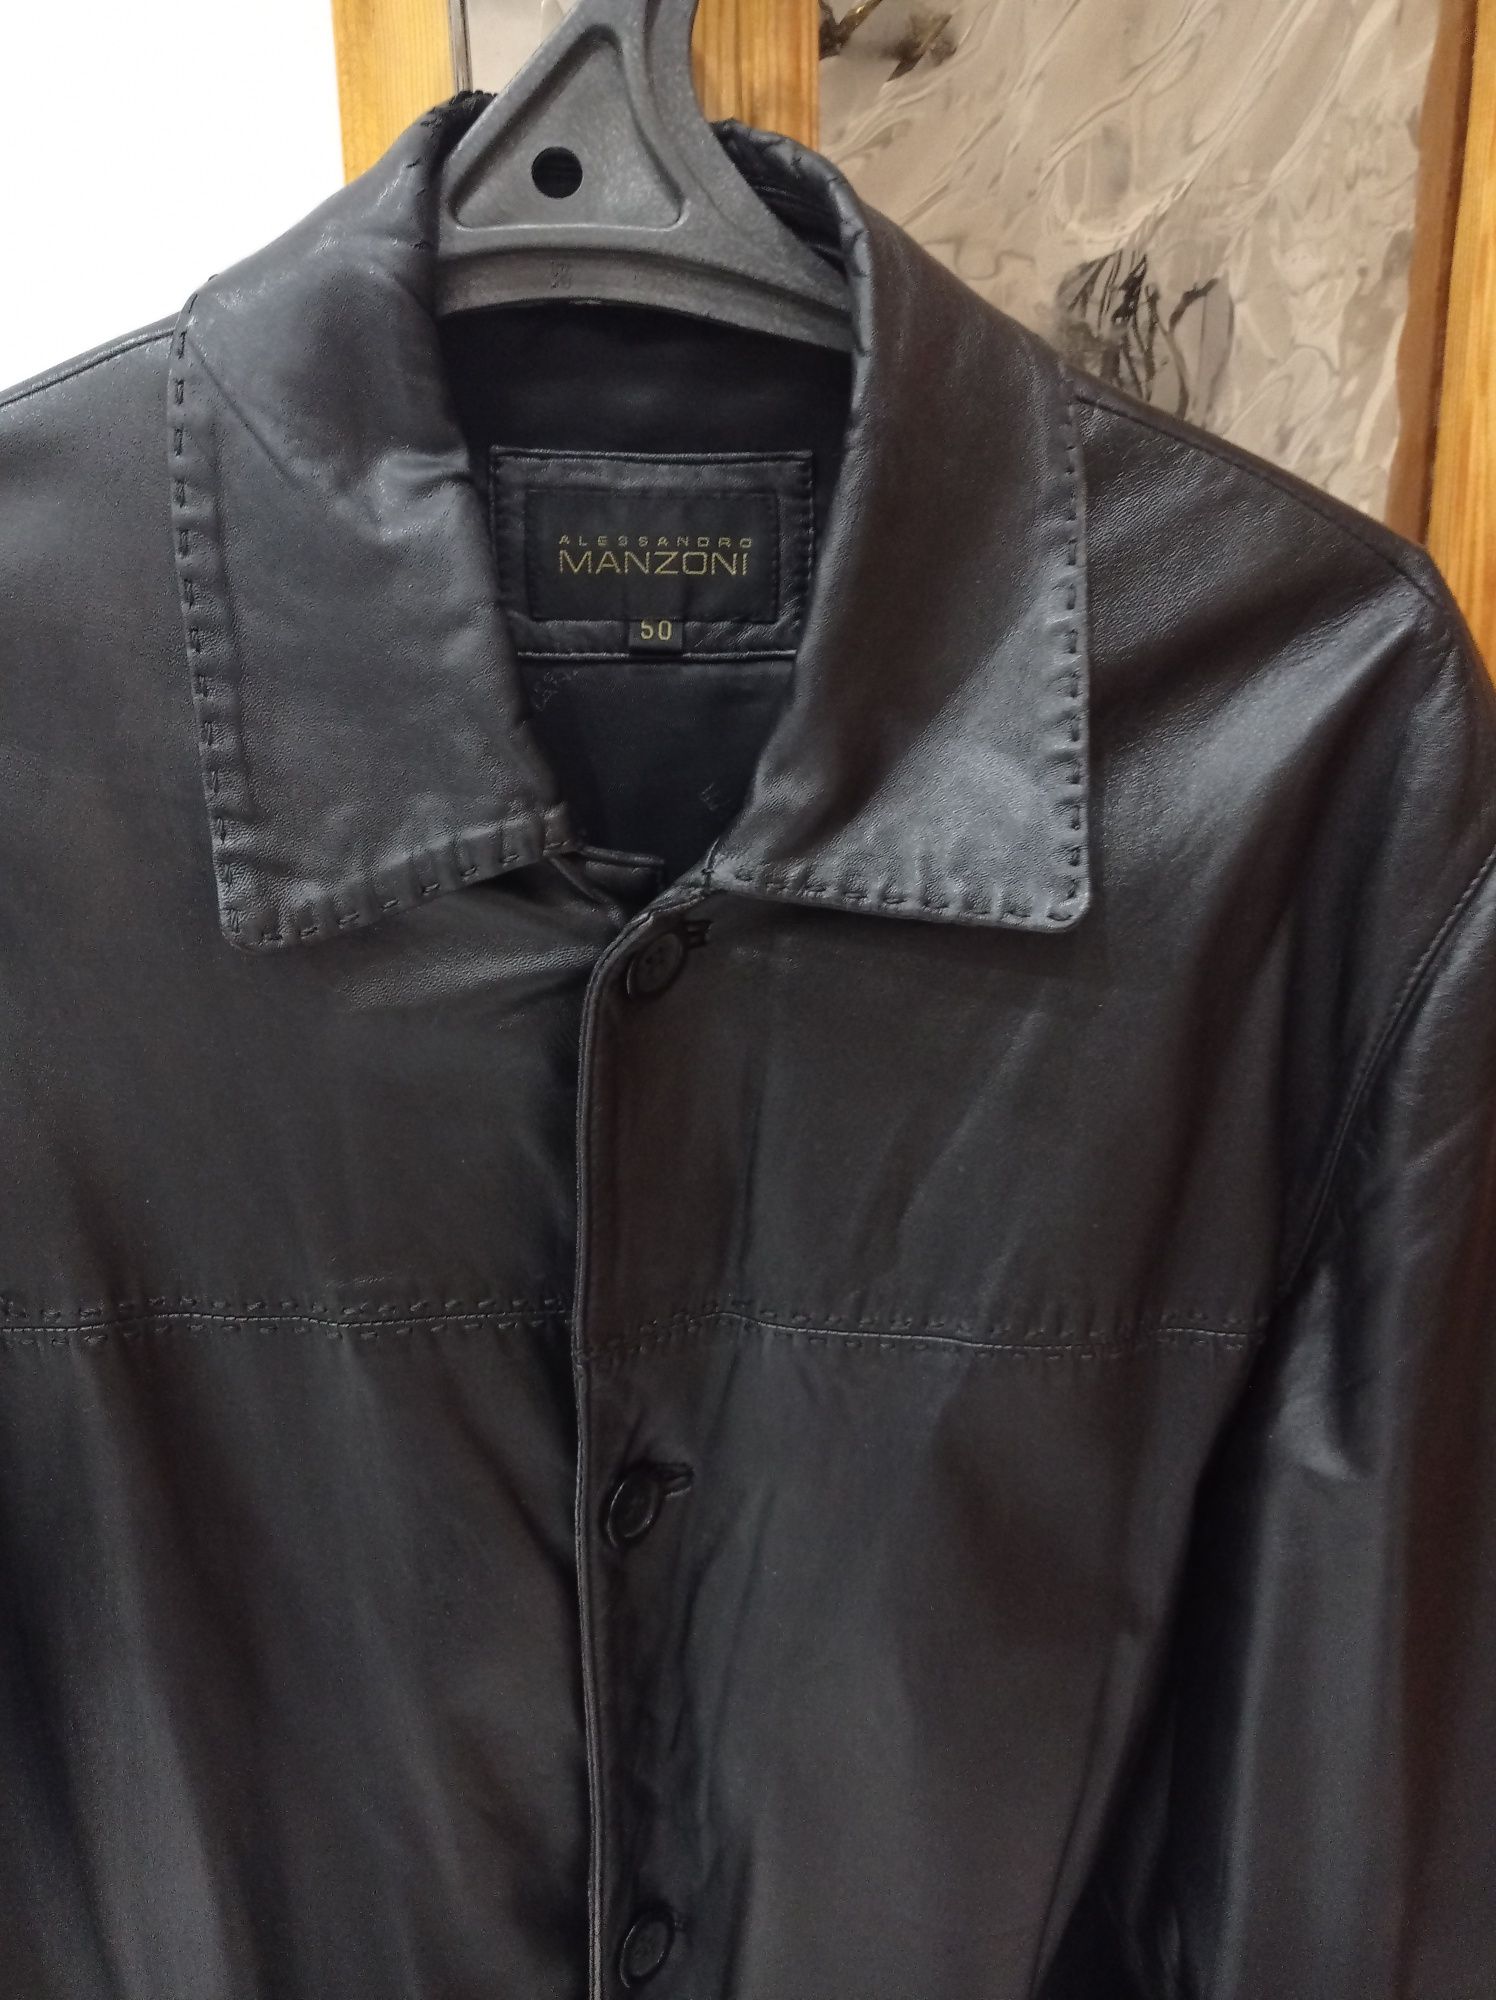 Кожаная тонкая куртка 50-52 размер из кожи высокого качества